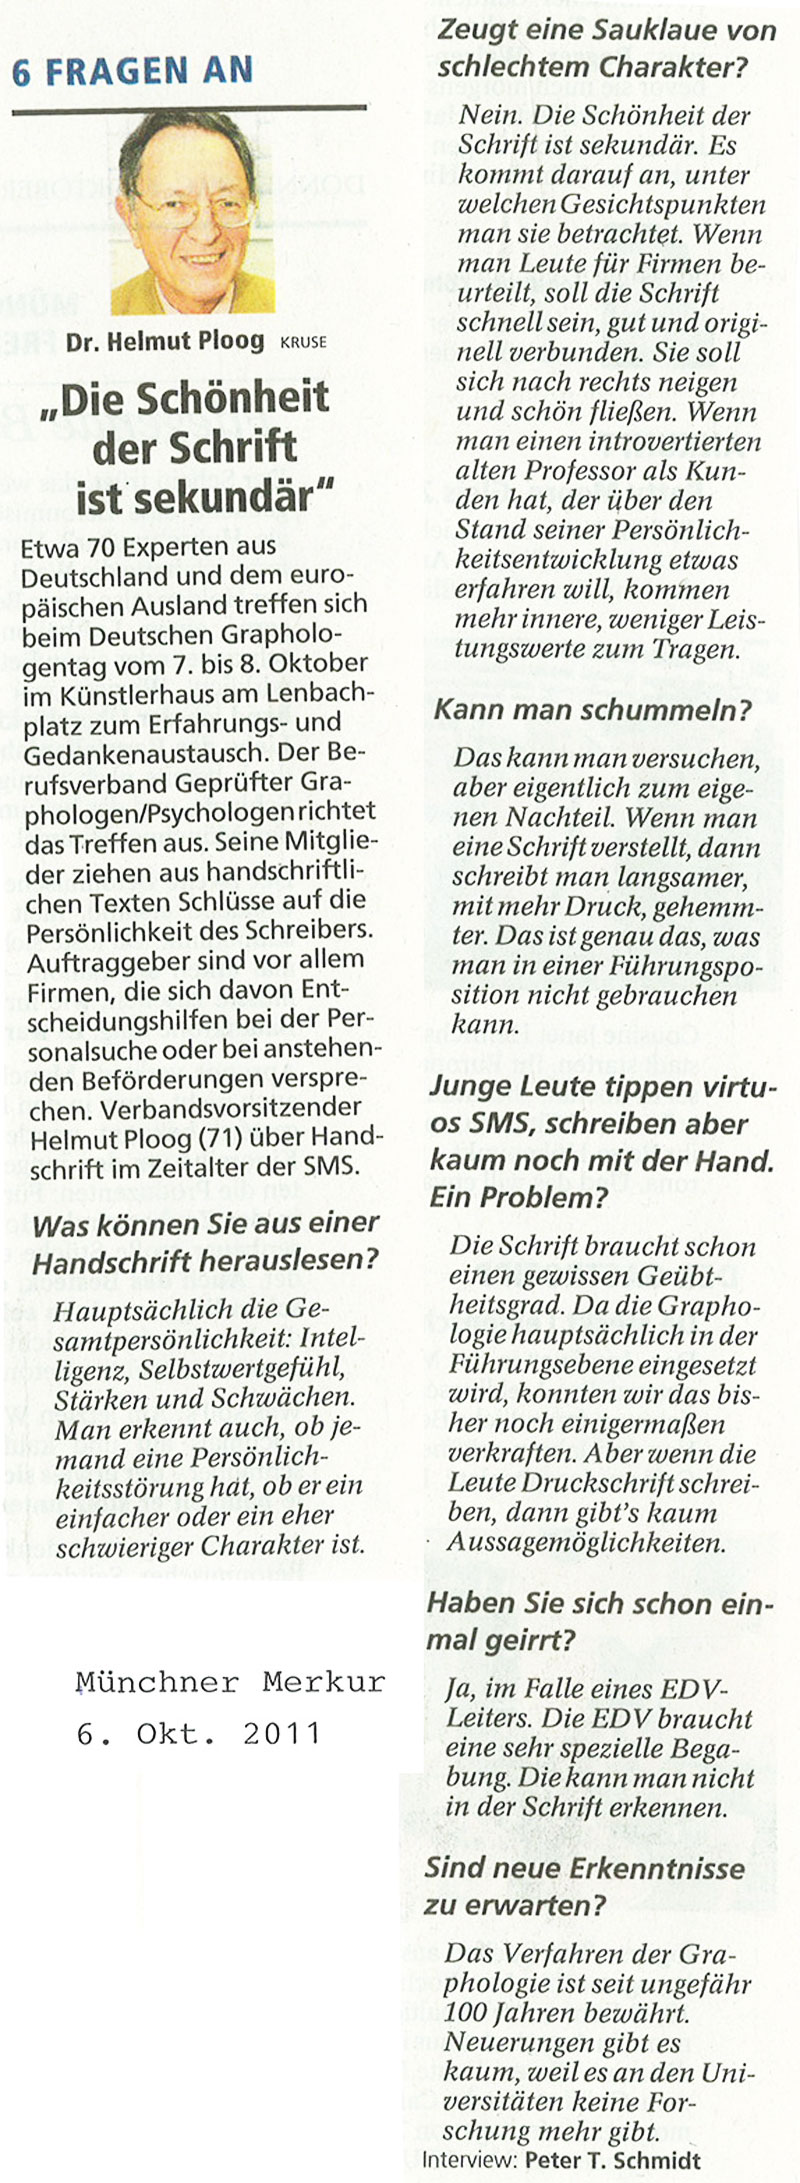 6.10.2011 Münchner Merkur: Die Schönheit der Schrift ist sekundär